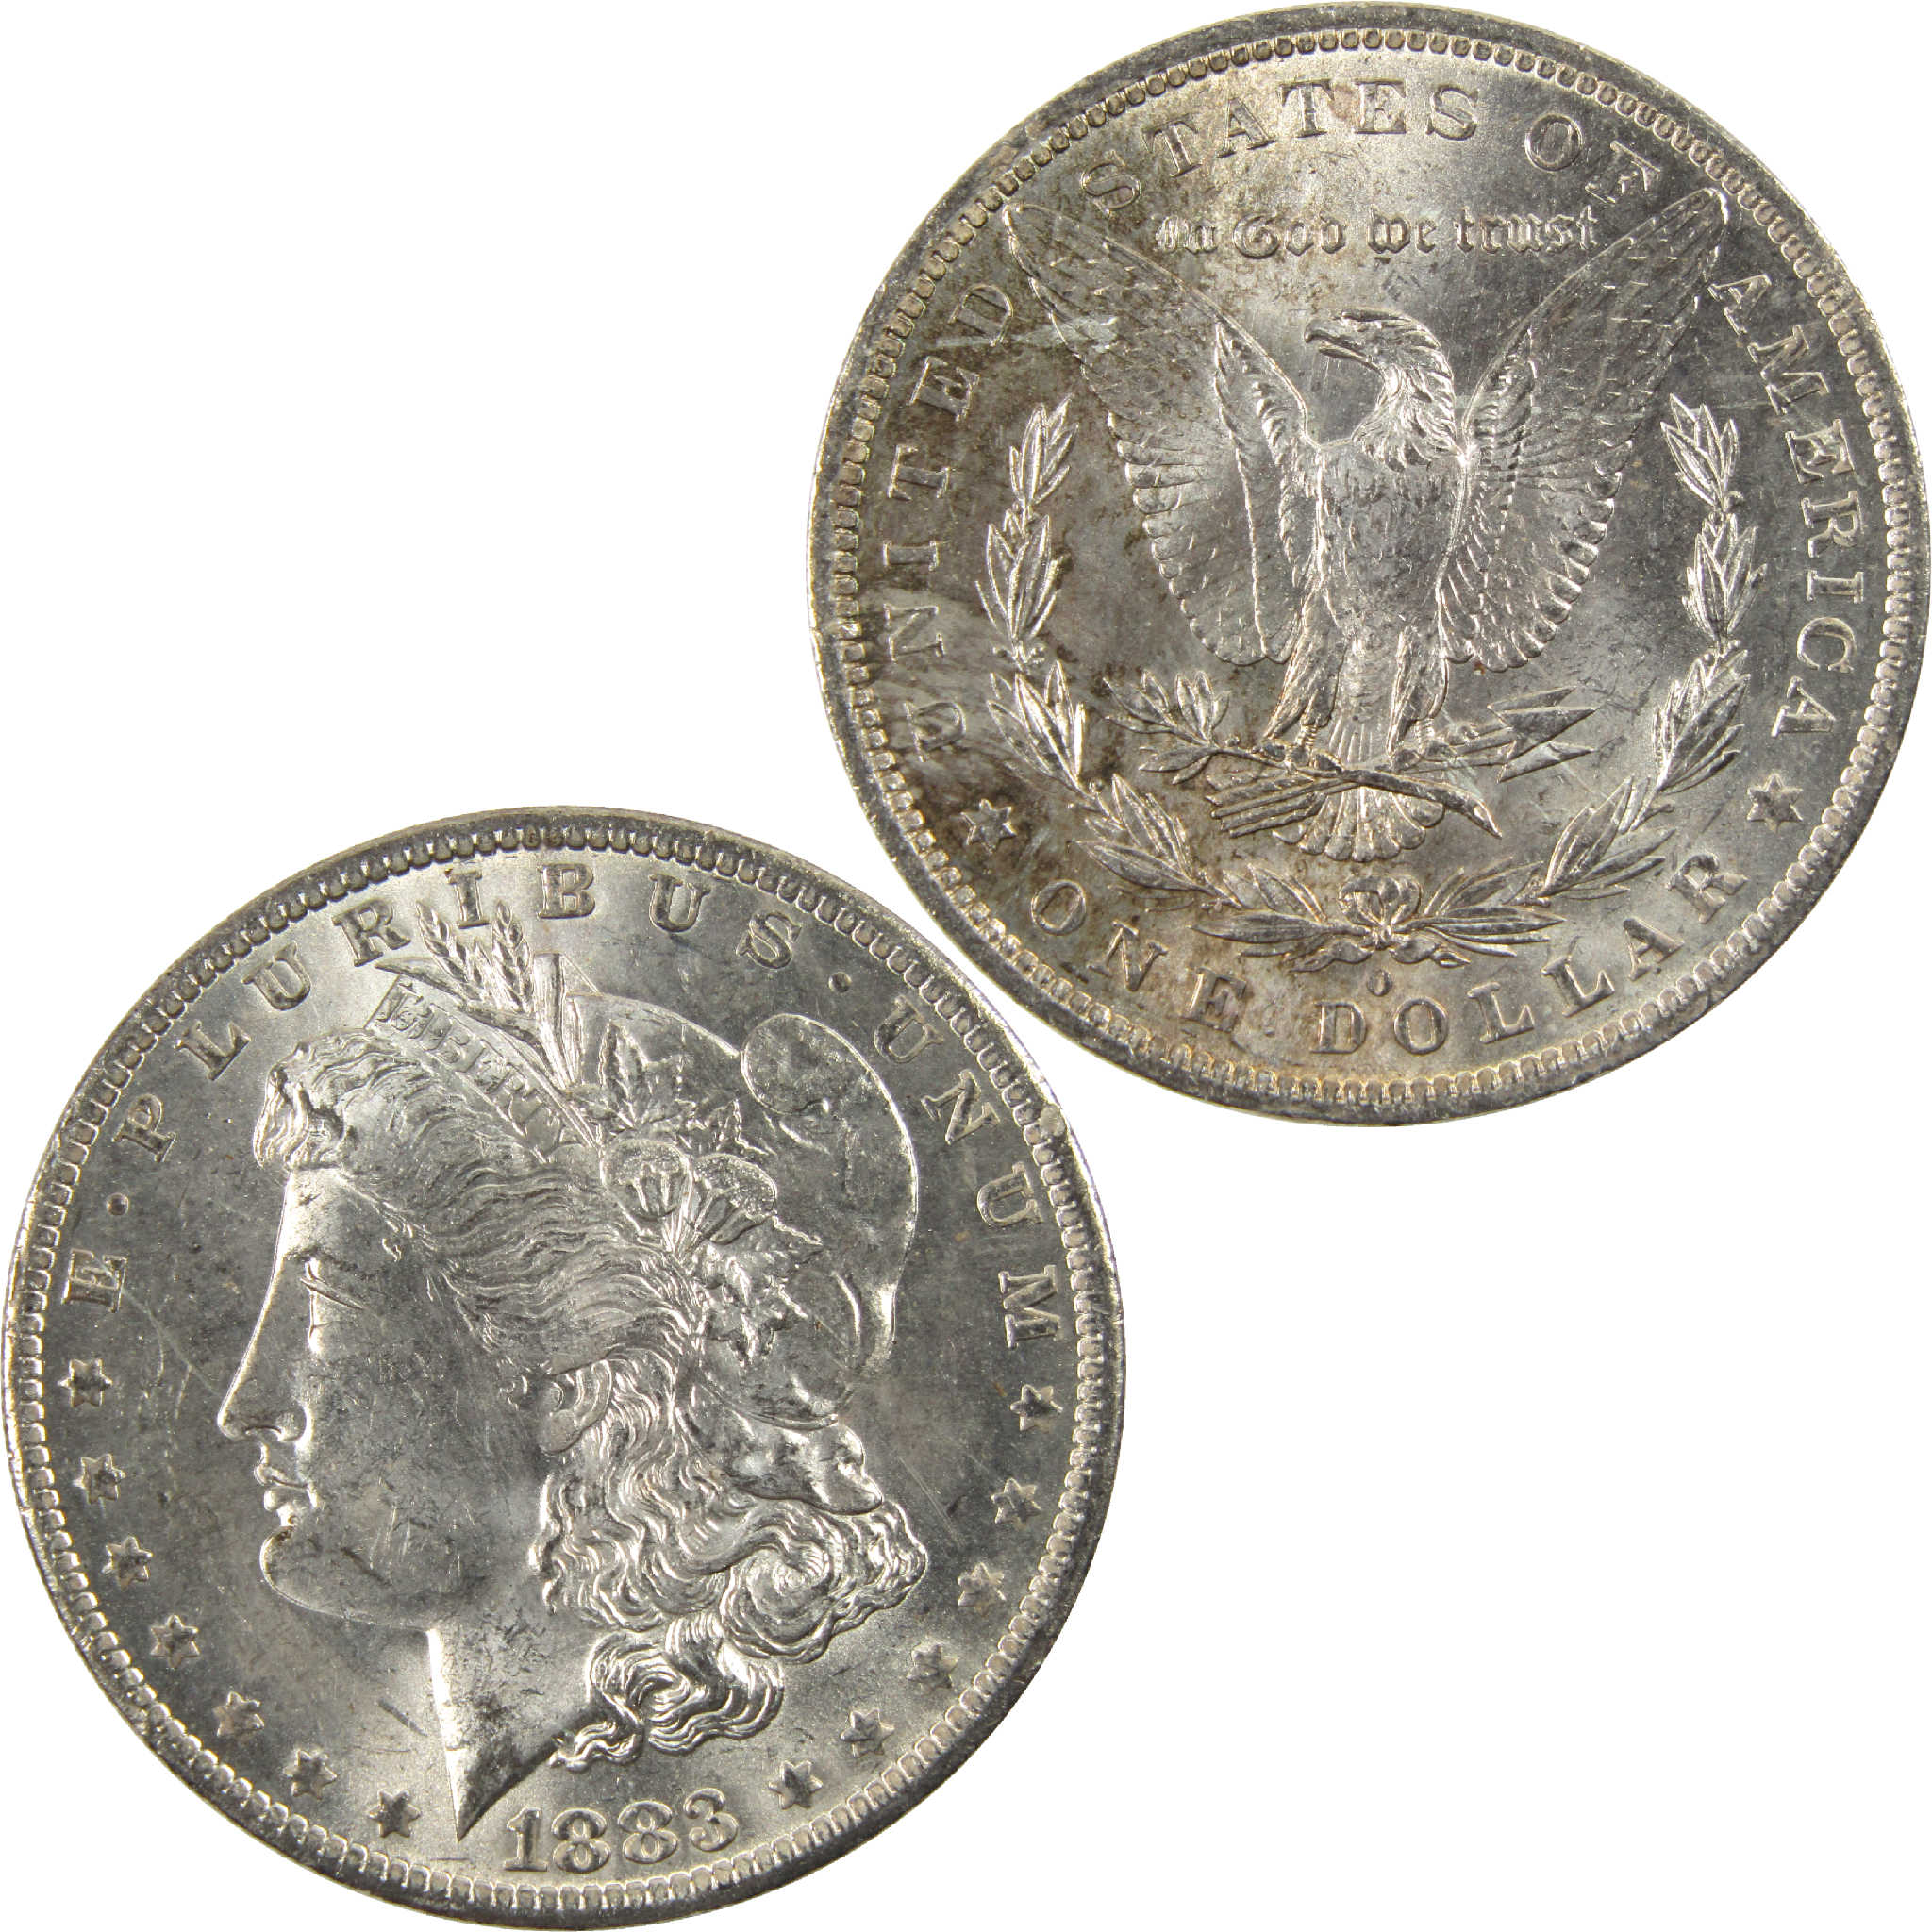 1883 O Morgan Dollar CH AU Choice About Uncirculated Silver $1 Coin - Morgan coin - Morgan silver dollar - Morgan silver dollar for sale - Profile Coins &amp; Collectibles